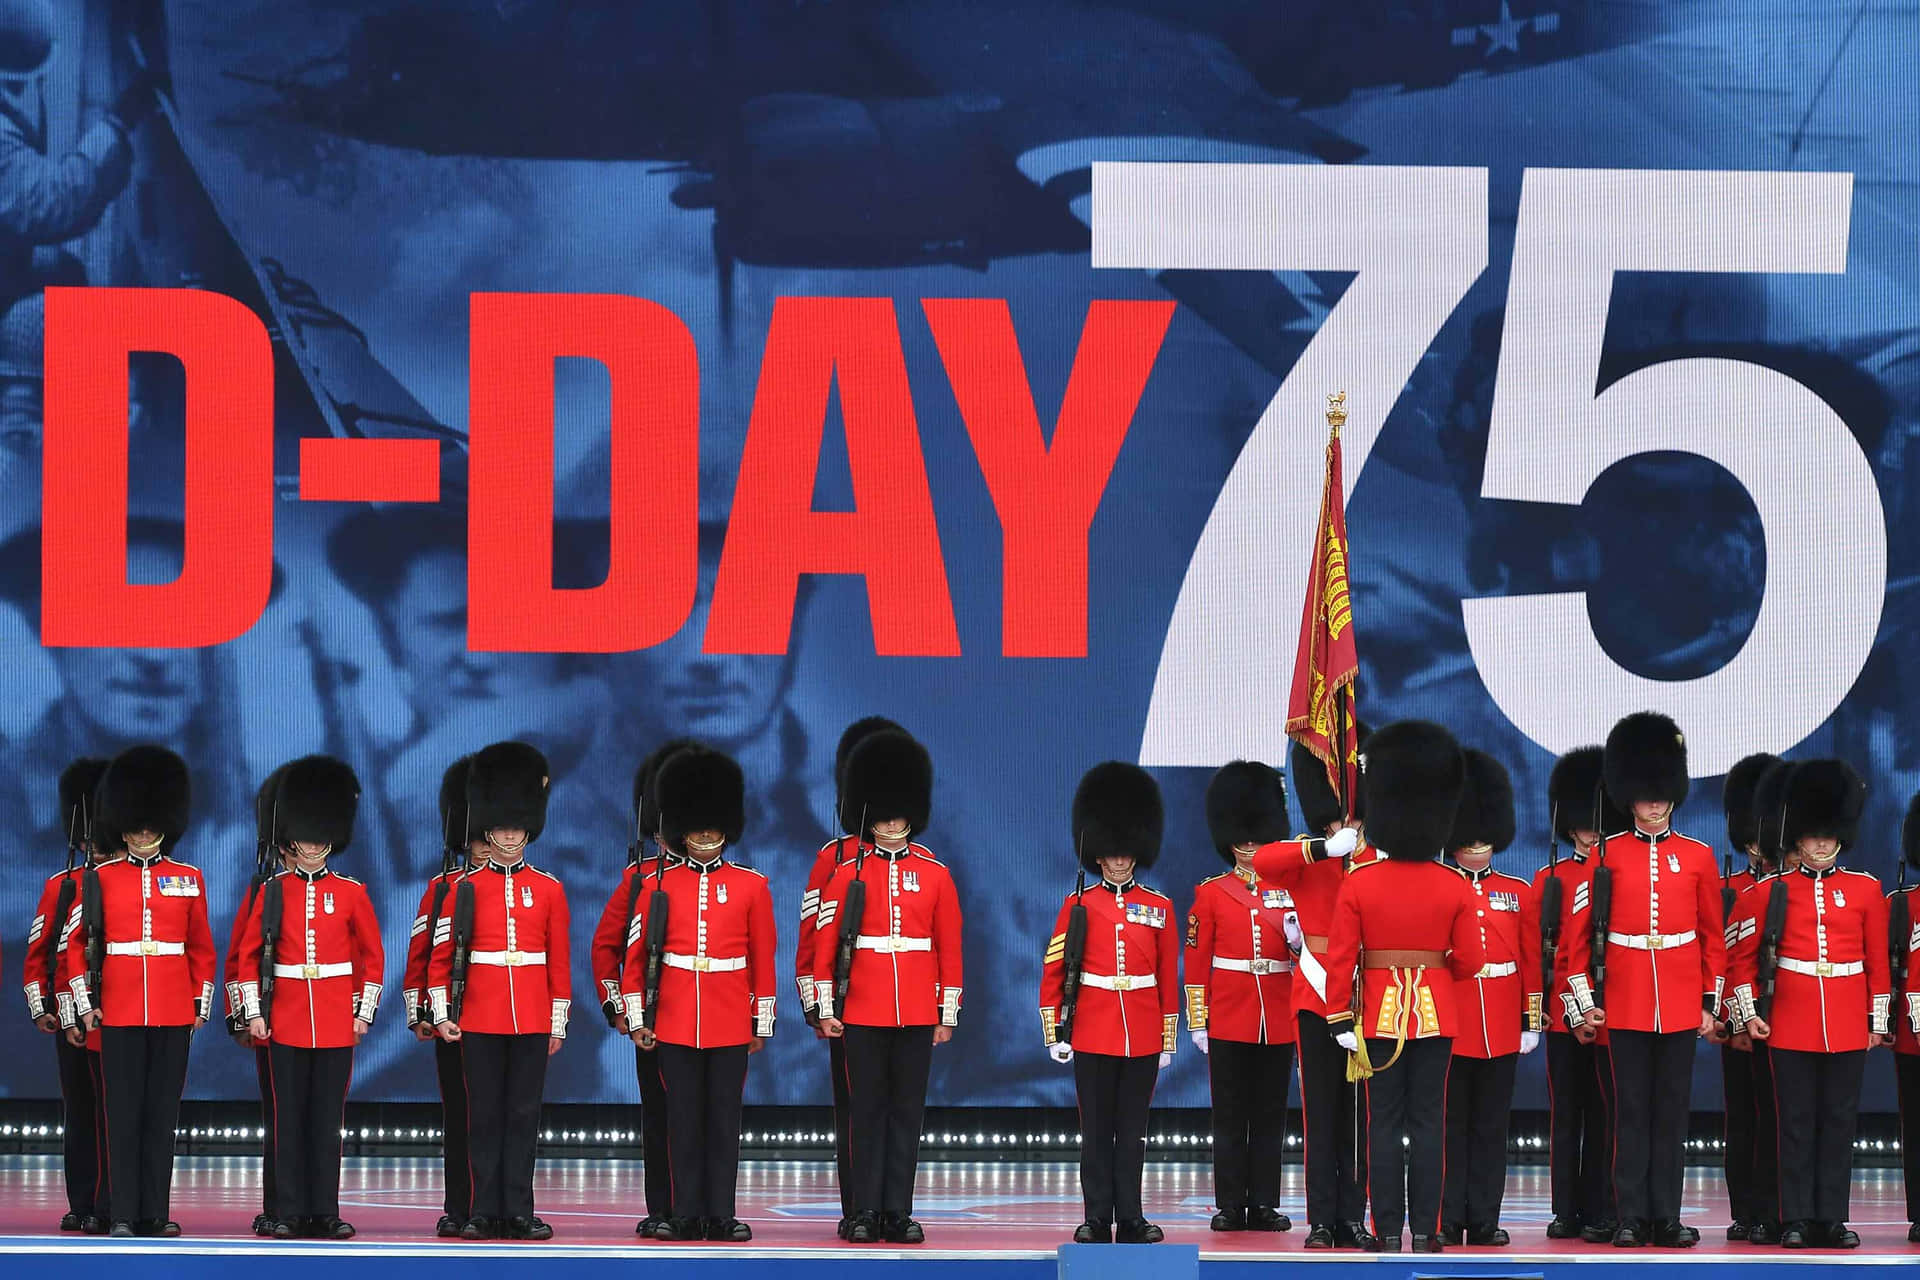 Ungruppo Di Soldati In Uniformi Rosse In Piedi Di Fronte A Un Grande Cartello